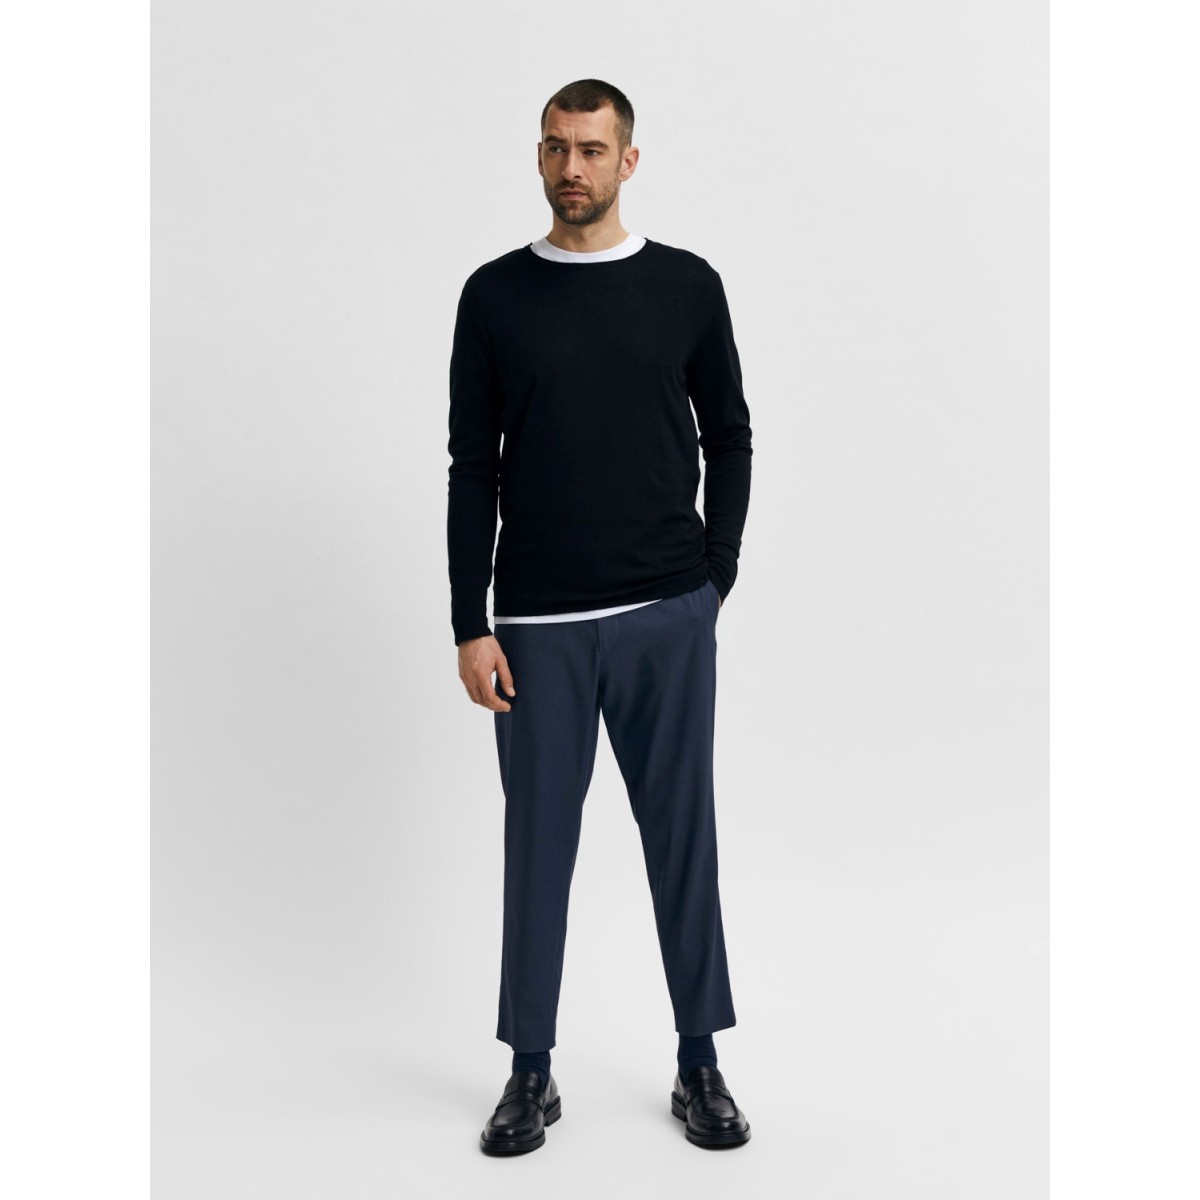 Selected Homme - Pantalon habillé court coupe ajustée avec taille élastique  - Noir